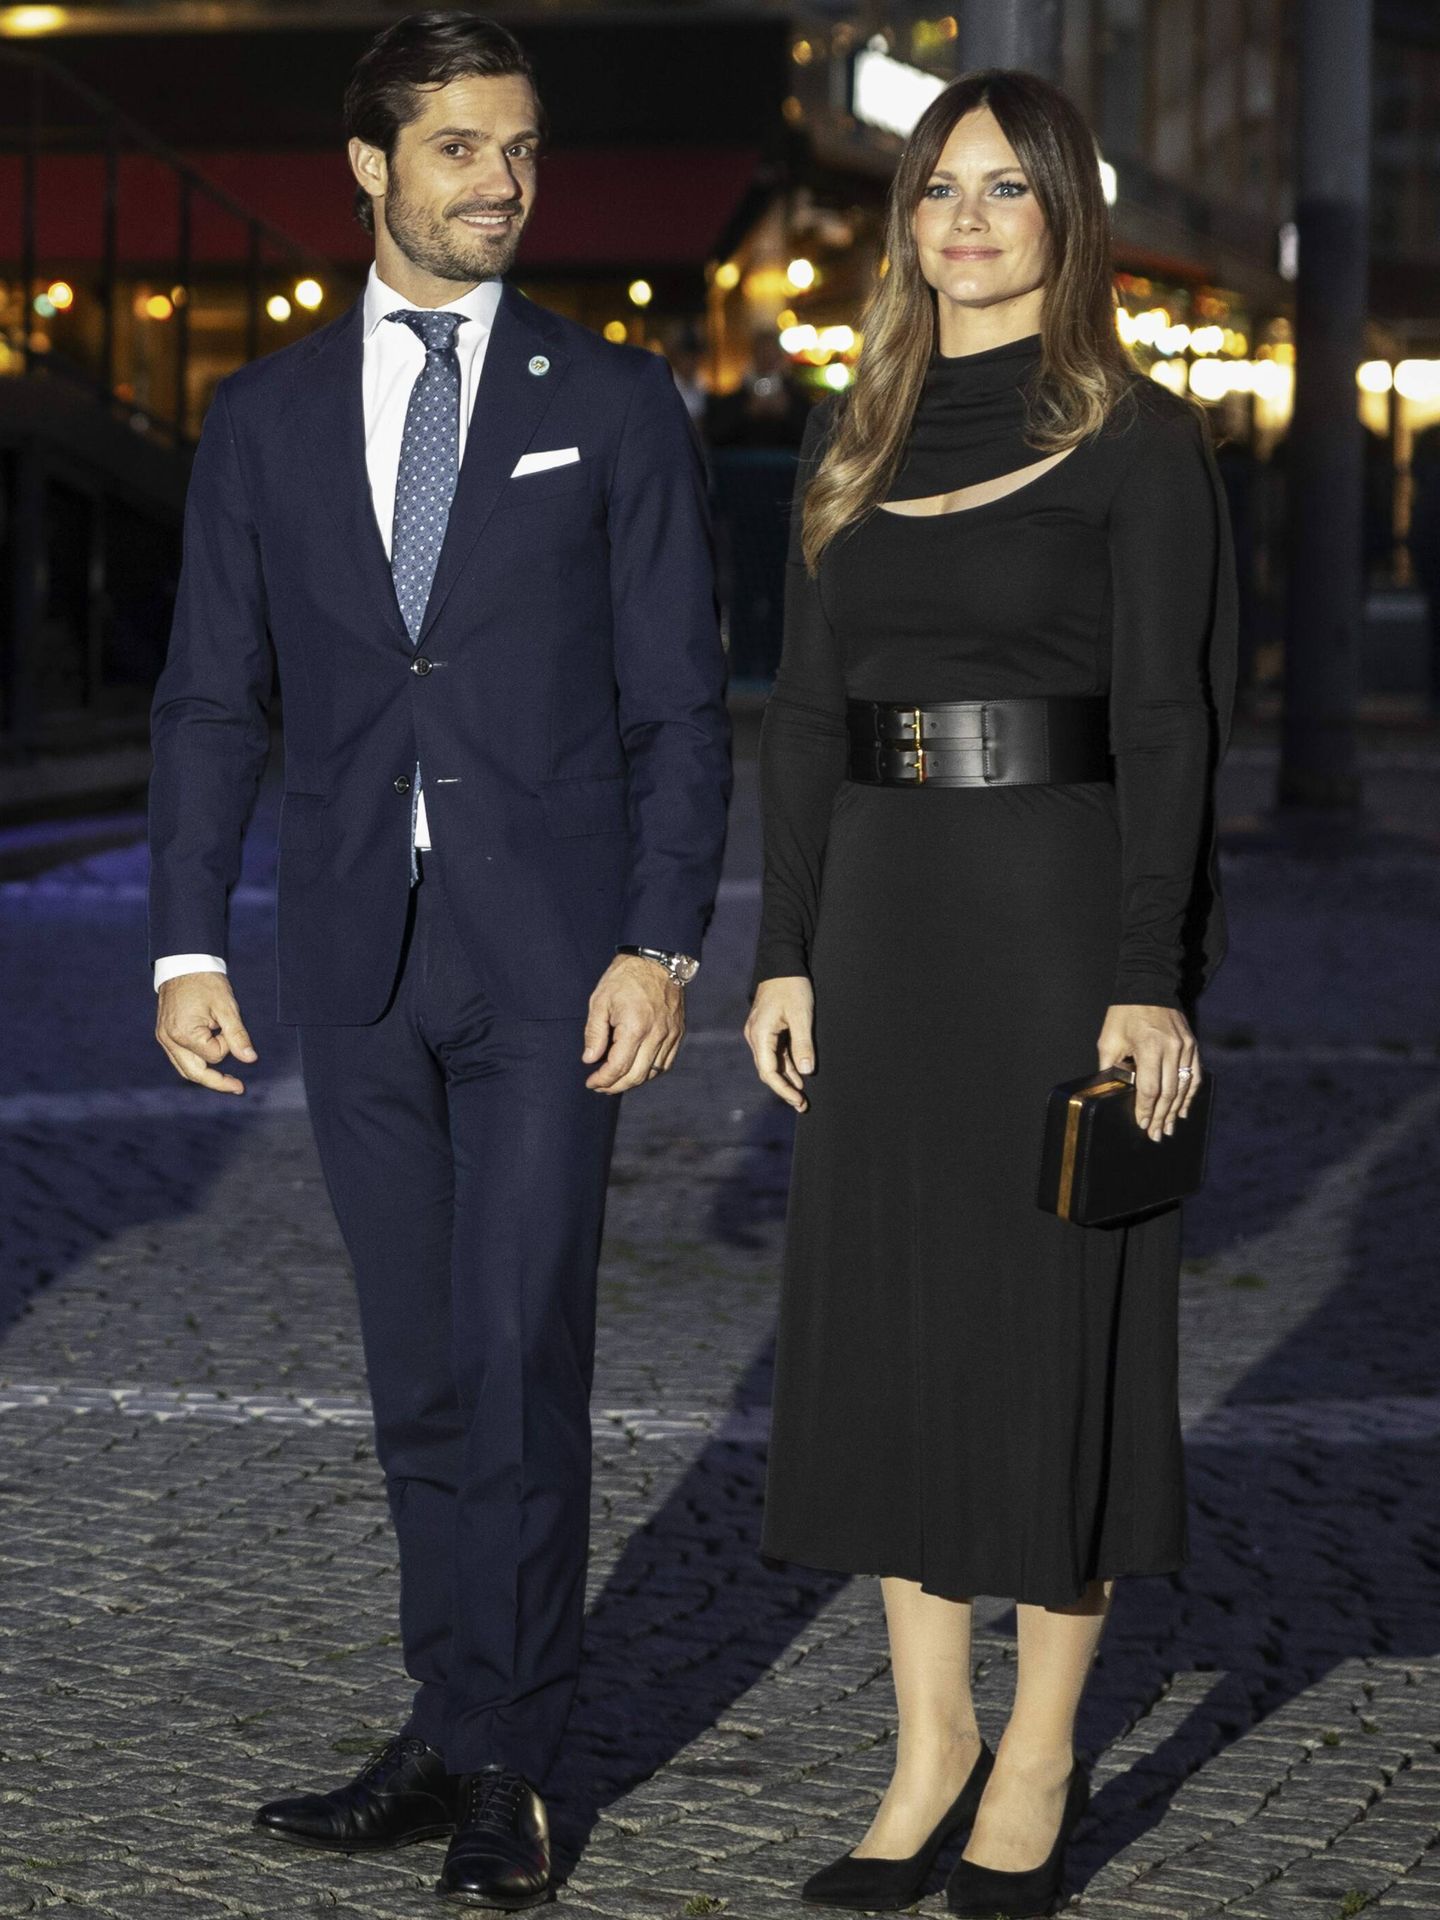 La princesa Sofía a su llegada a un concierto junto al príncipe Carlos Felipe. (Cordon Press/Nils Petter Nilsson)